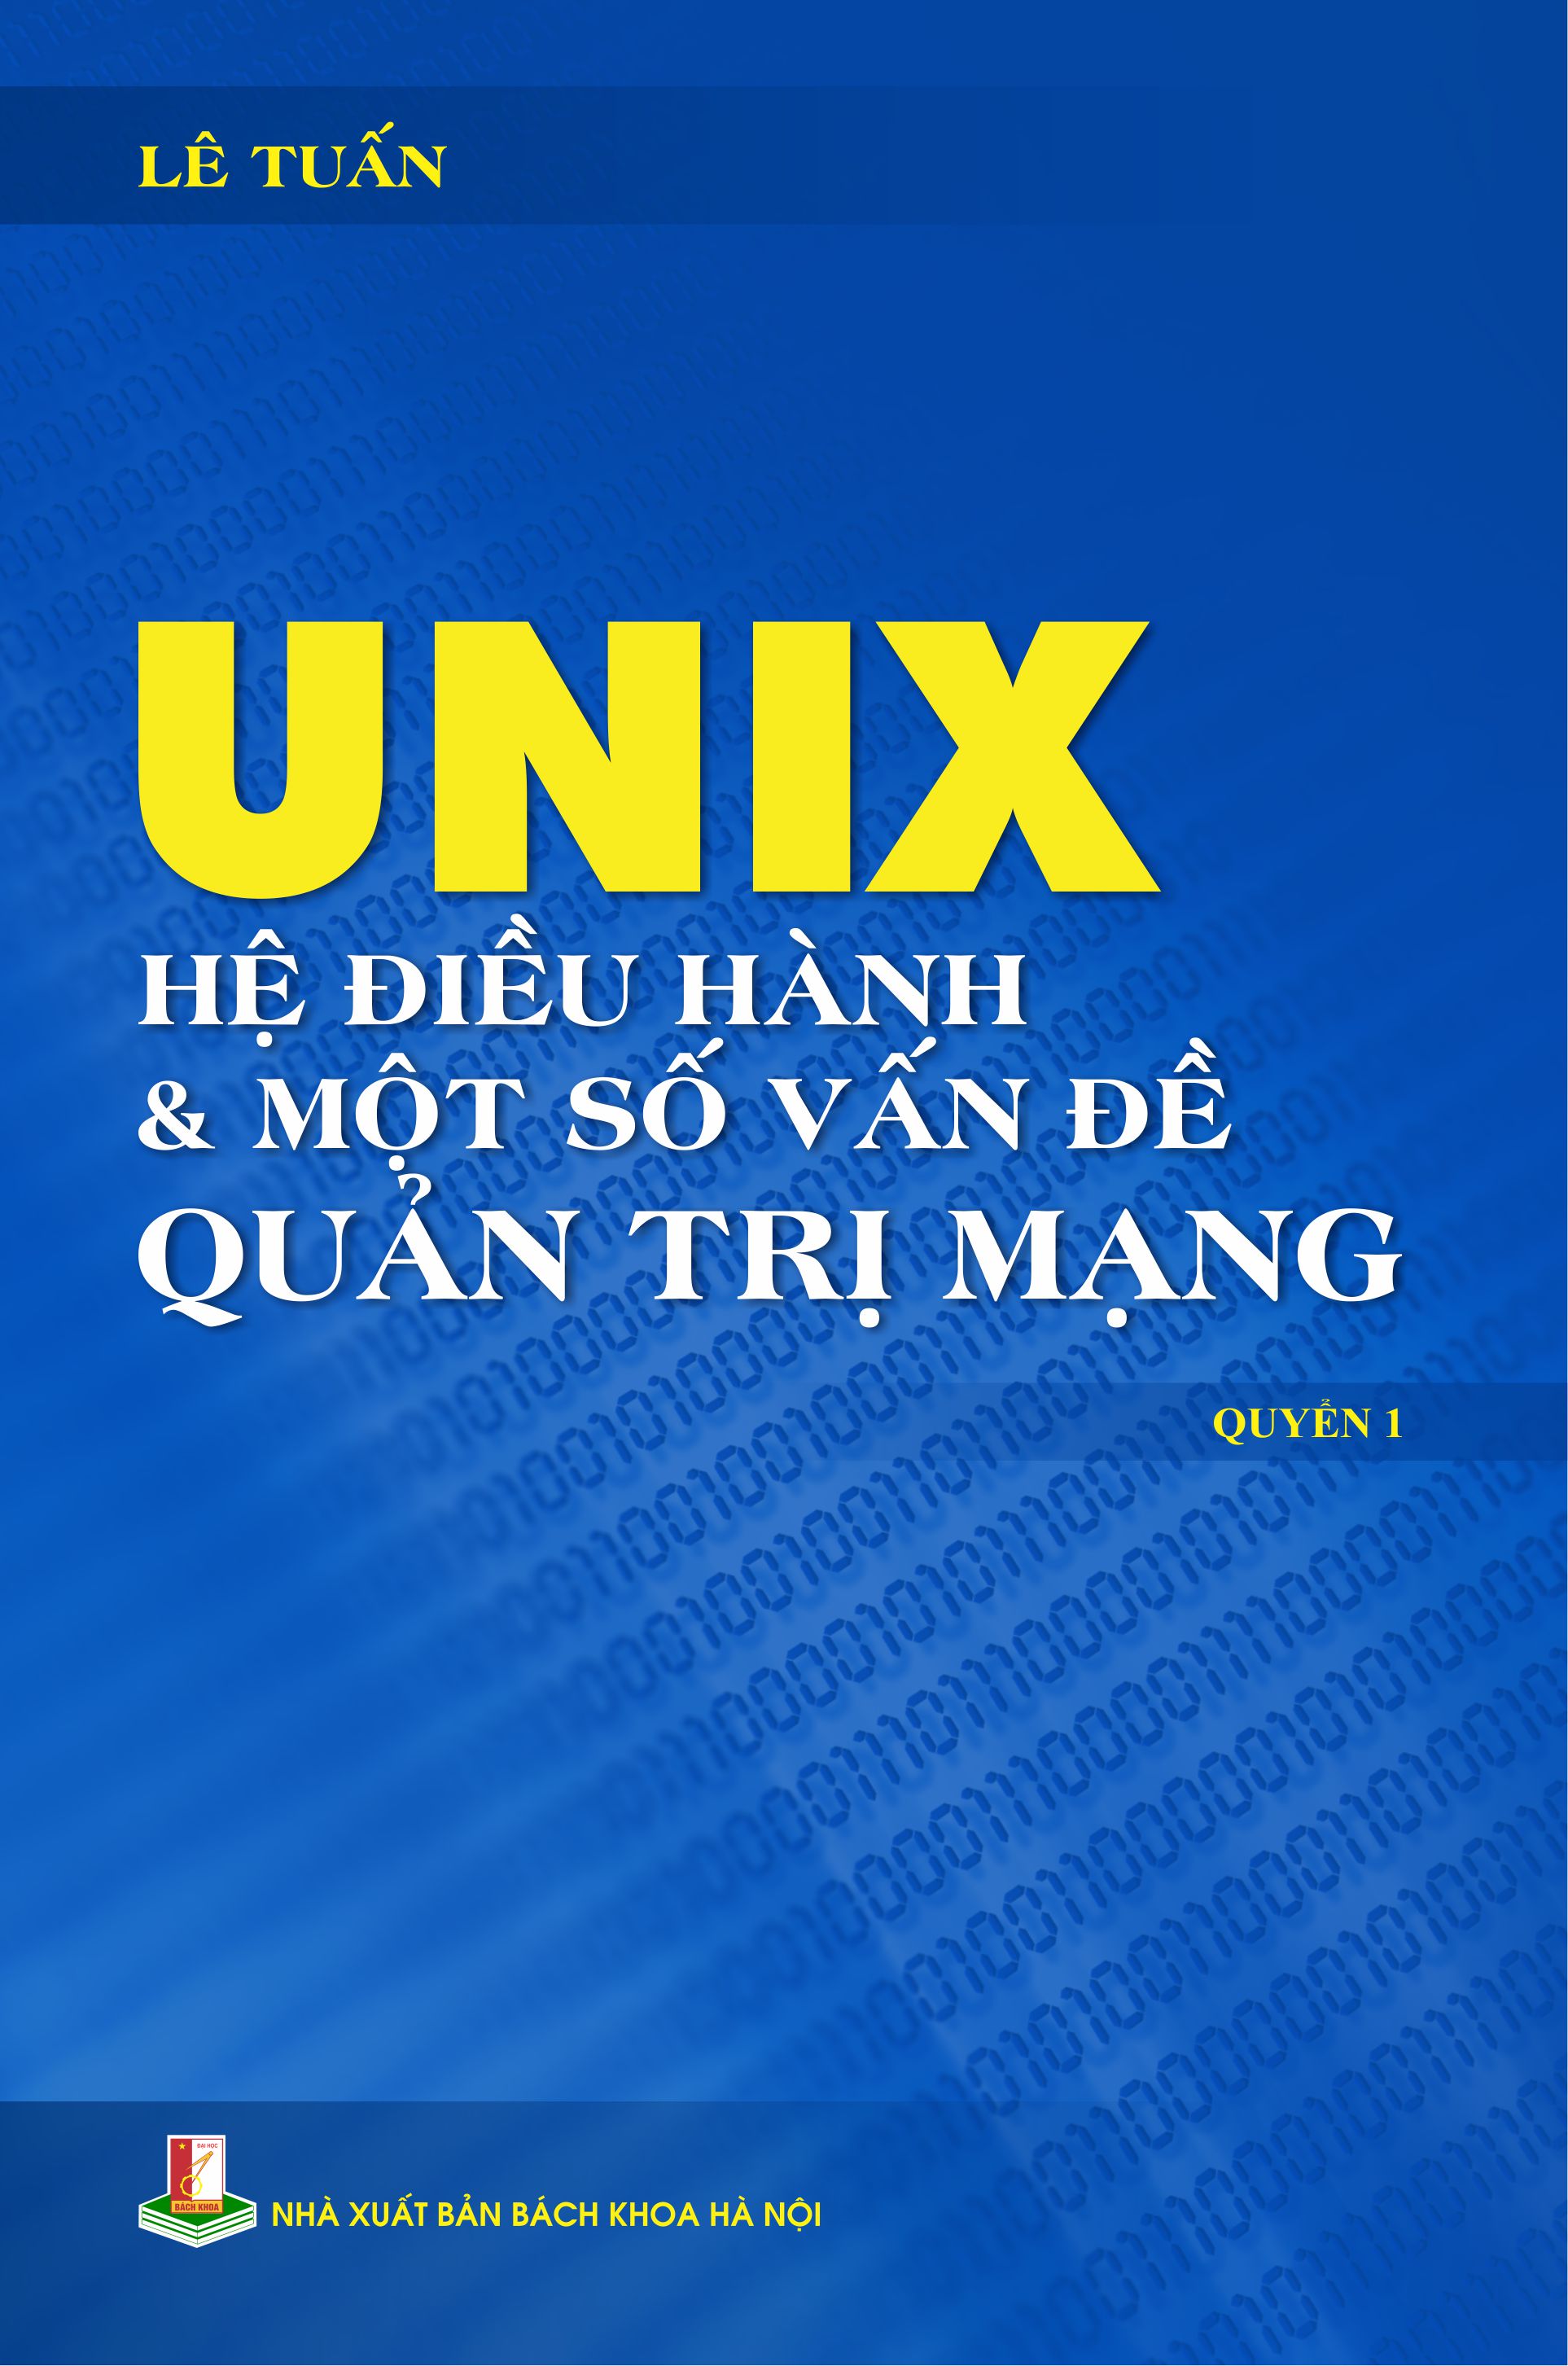 Unix - Hệ điều hành & một số vấn đề quản trị mạng Quyển 1